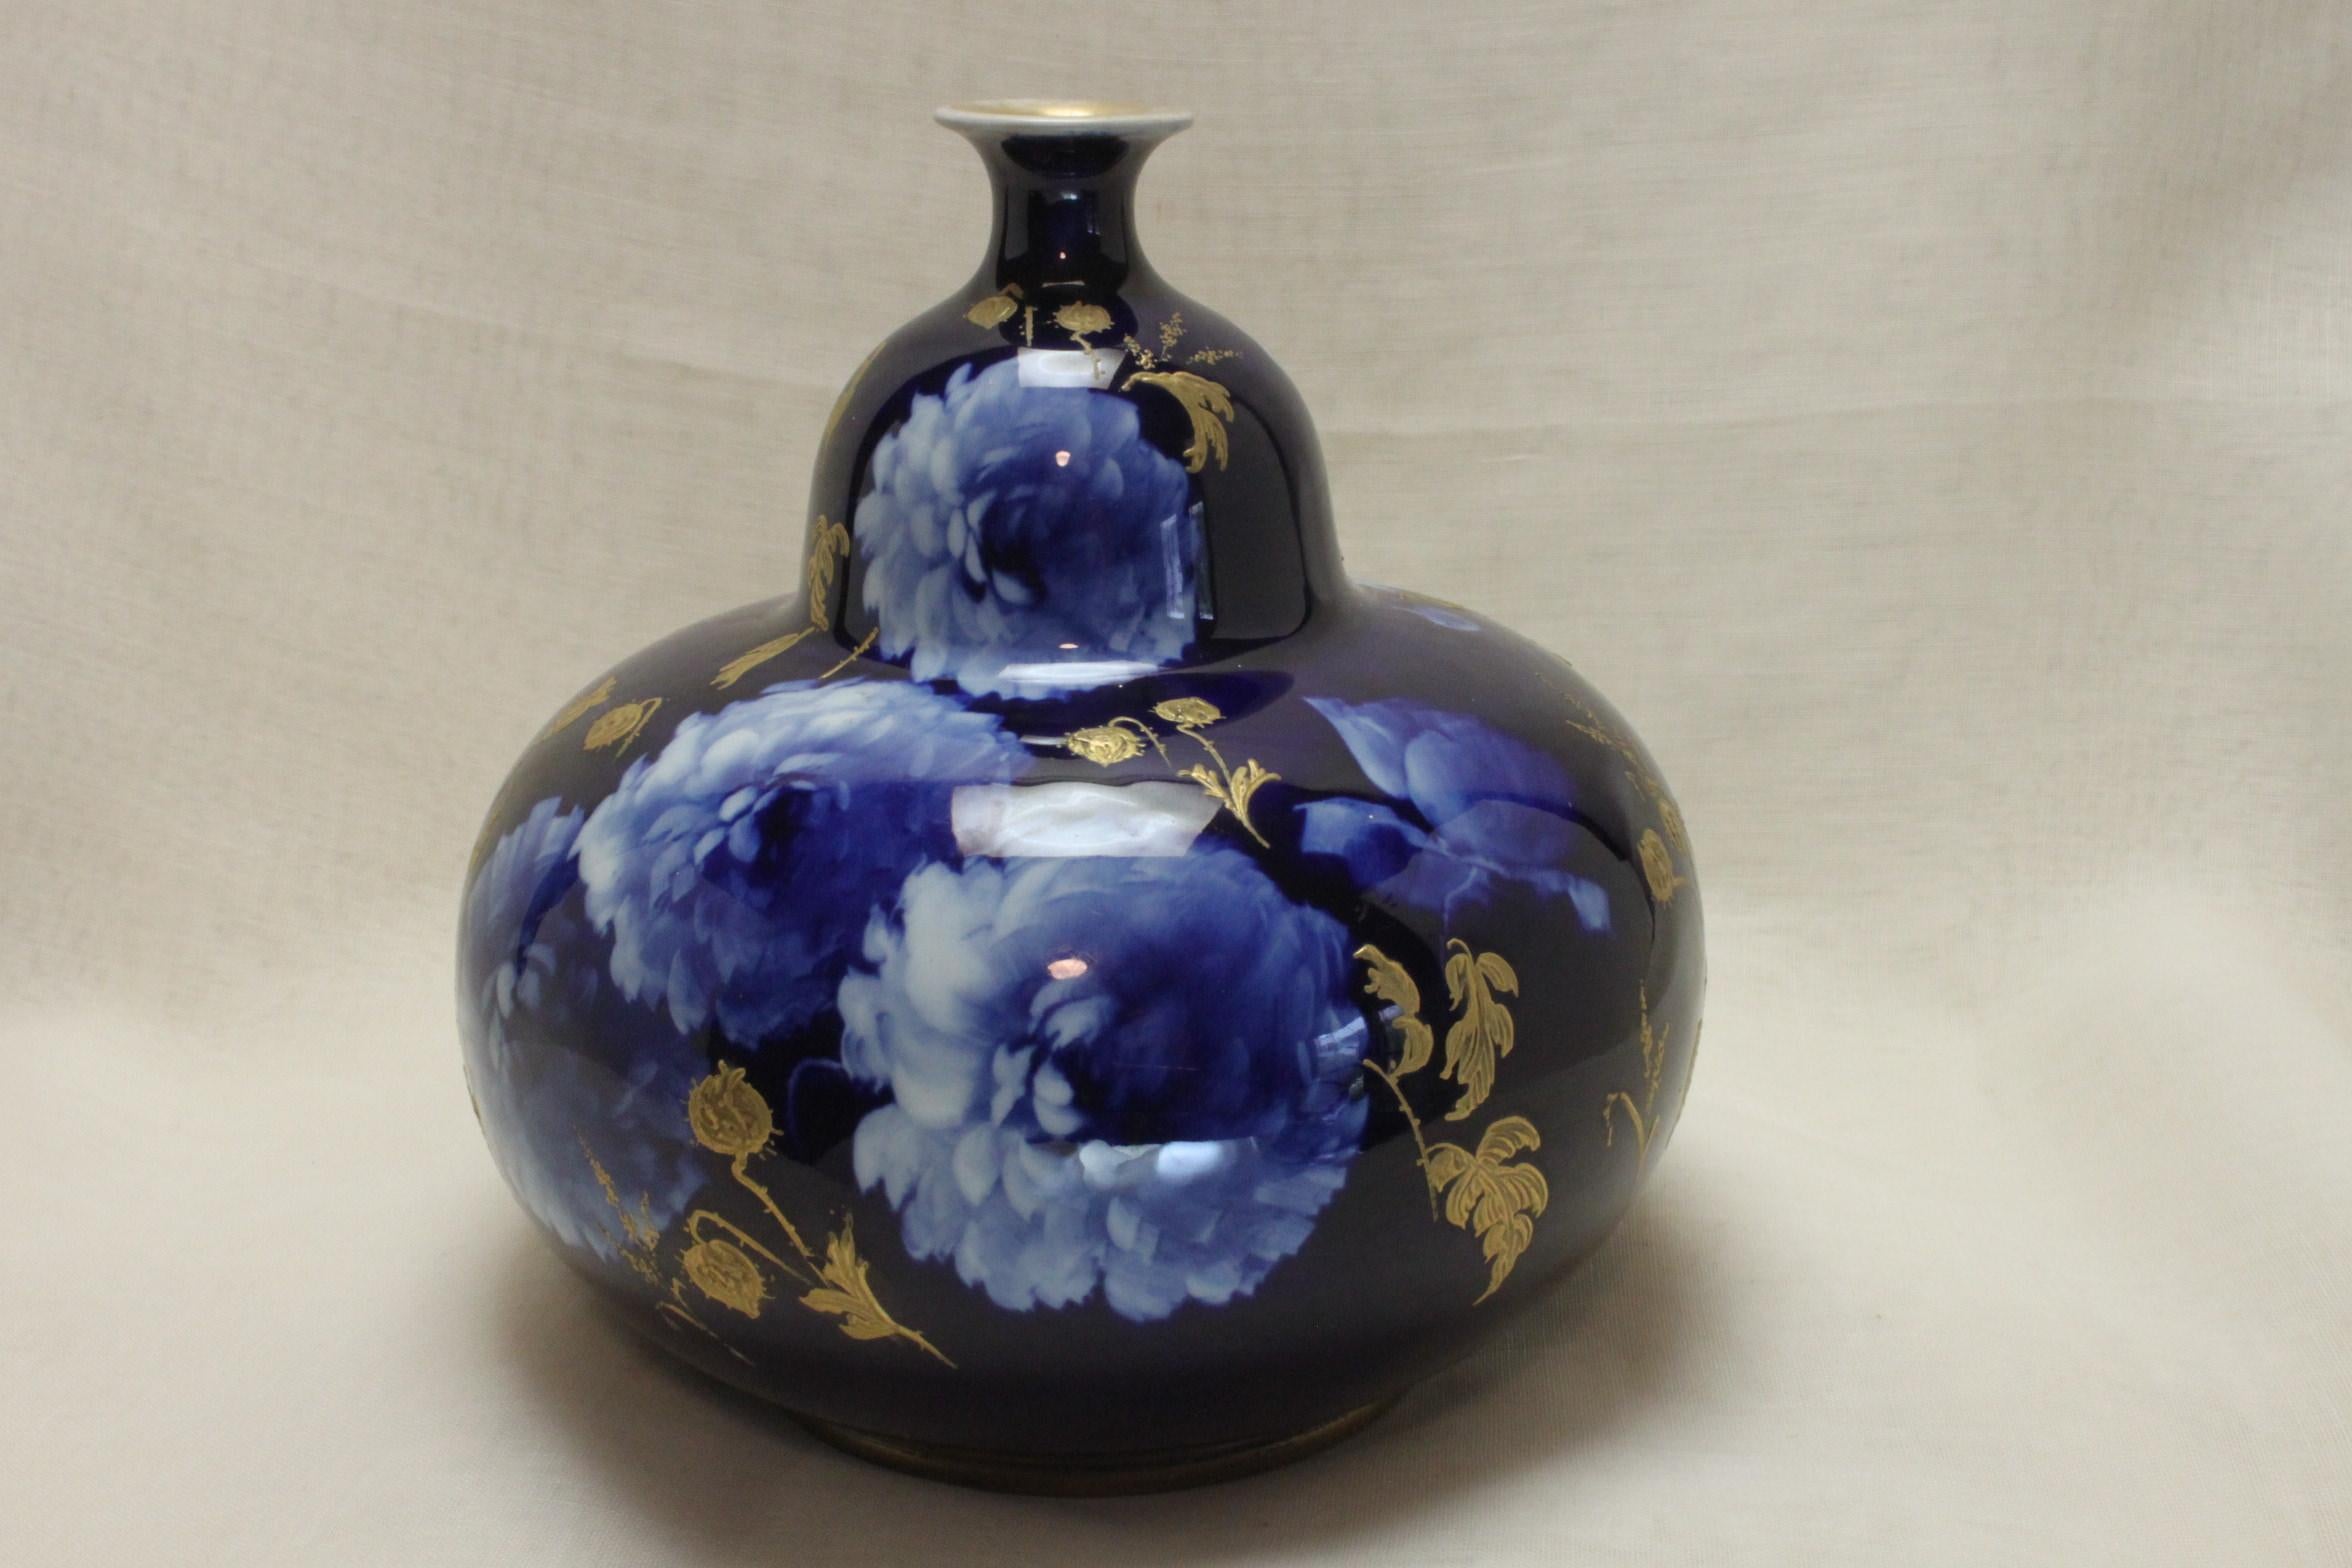 Ce vase en forme de gourde provient de la ligne Corolian Ware de Doulton Burslem qui a été fabriquée de 1891 à 1902 et provient du studio de Robert Allen, un designer et peintre très talentueux. Le décor a été réalisé selon la méthode du sgraffite,